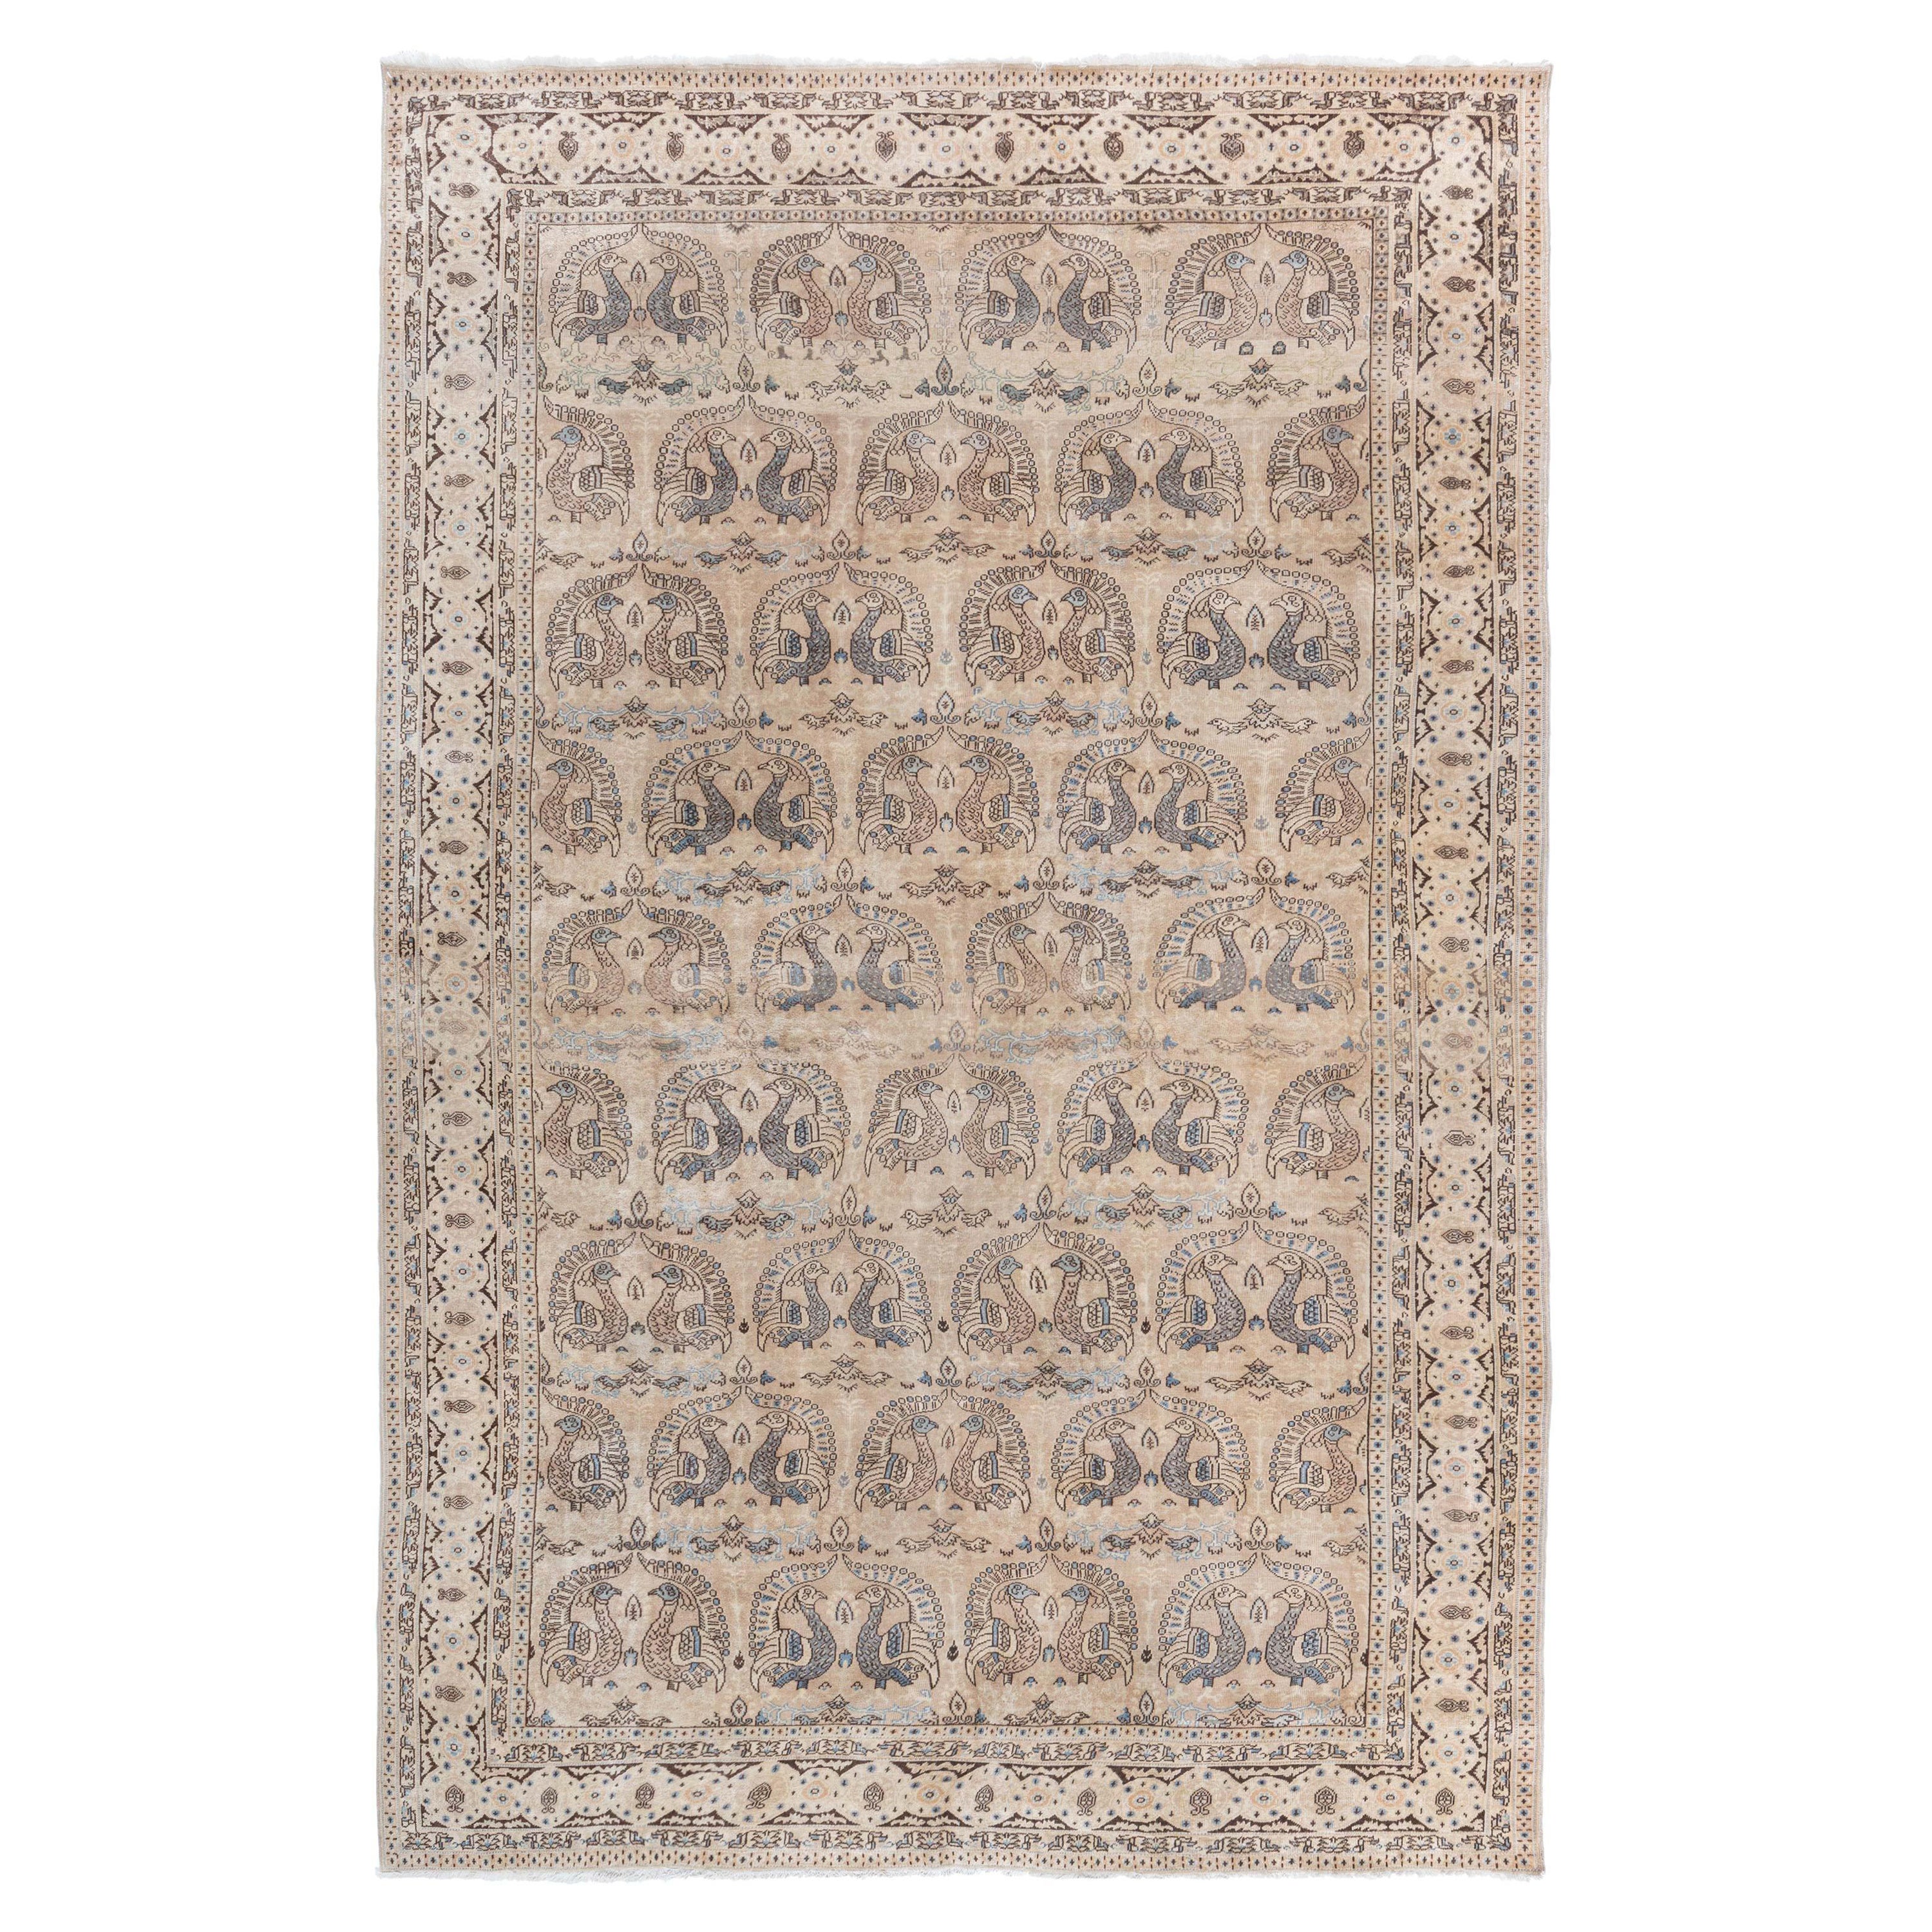 Antique Sivas Handwoven Wool Carpet For Sale